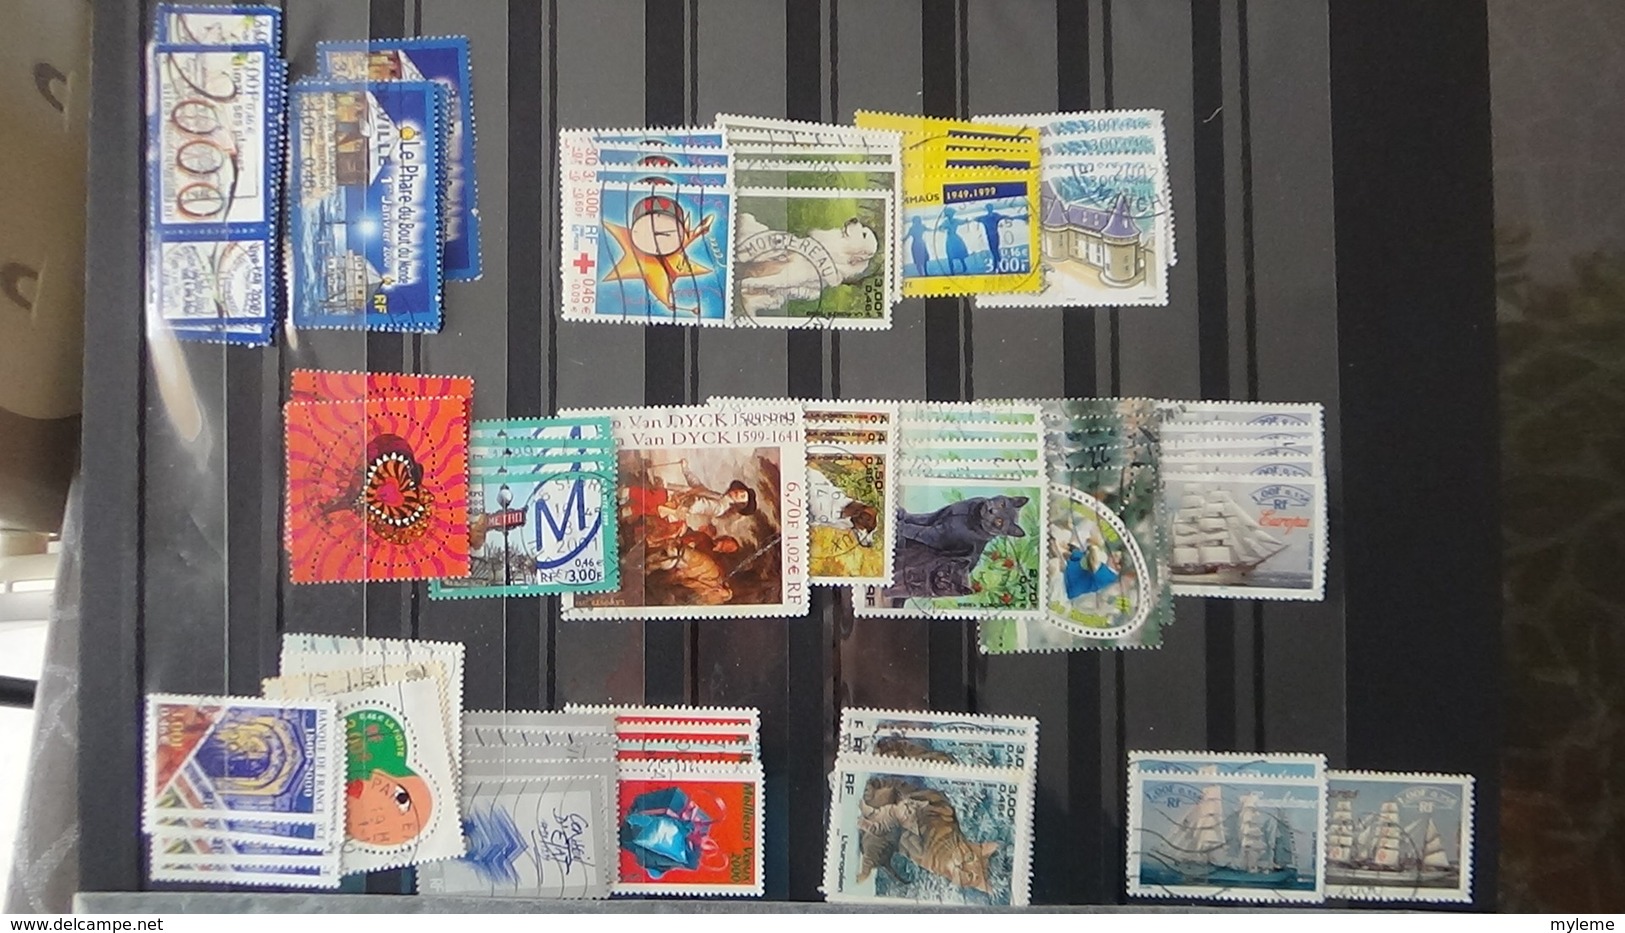 Mini stock de plusieurs centaines de timbres oblitérés de France. A saisir  !!!